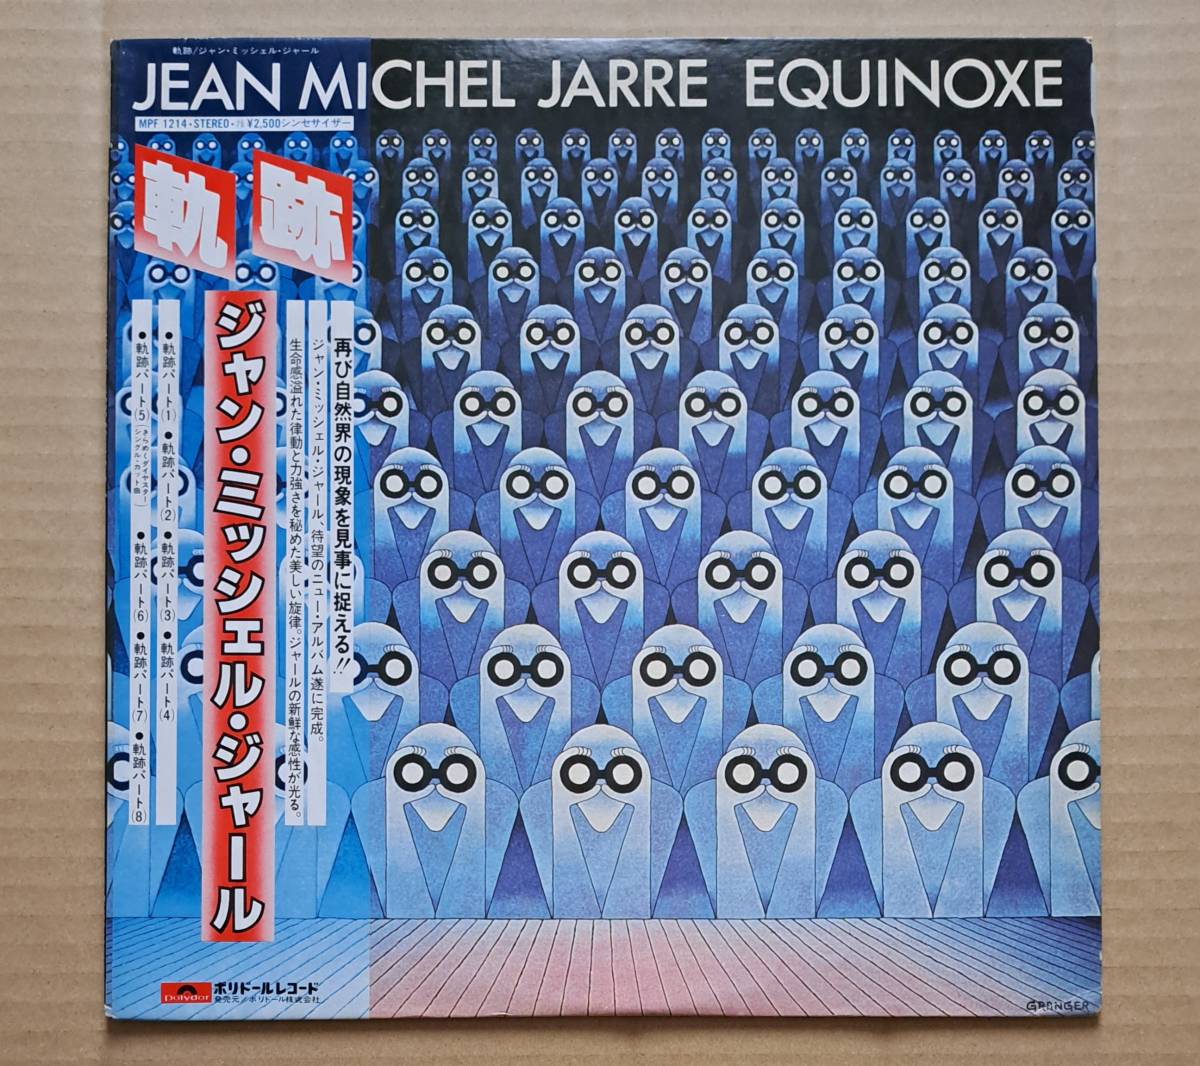 帯付LP◎ジャン・ミッシェル・ジャール『軌跡』MPF1214 ポリドール 1978年 シンセサイザー Jean Michel Jarre / Equinoxe_画像1